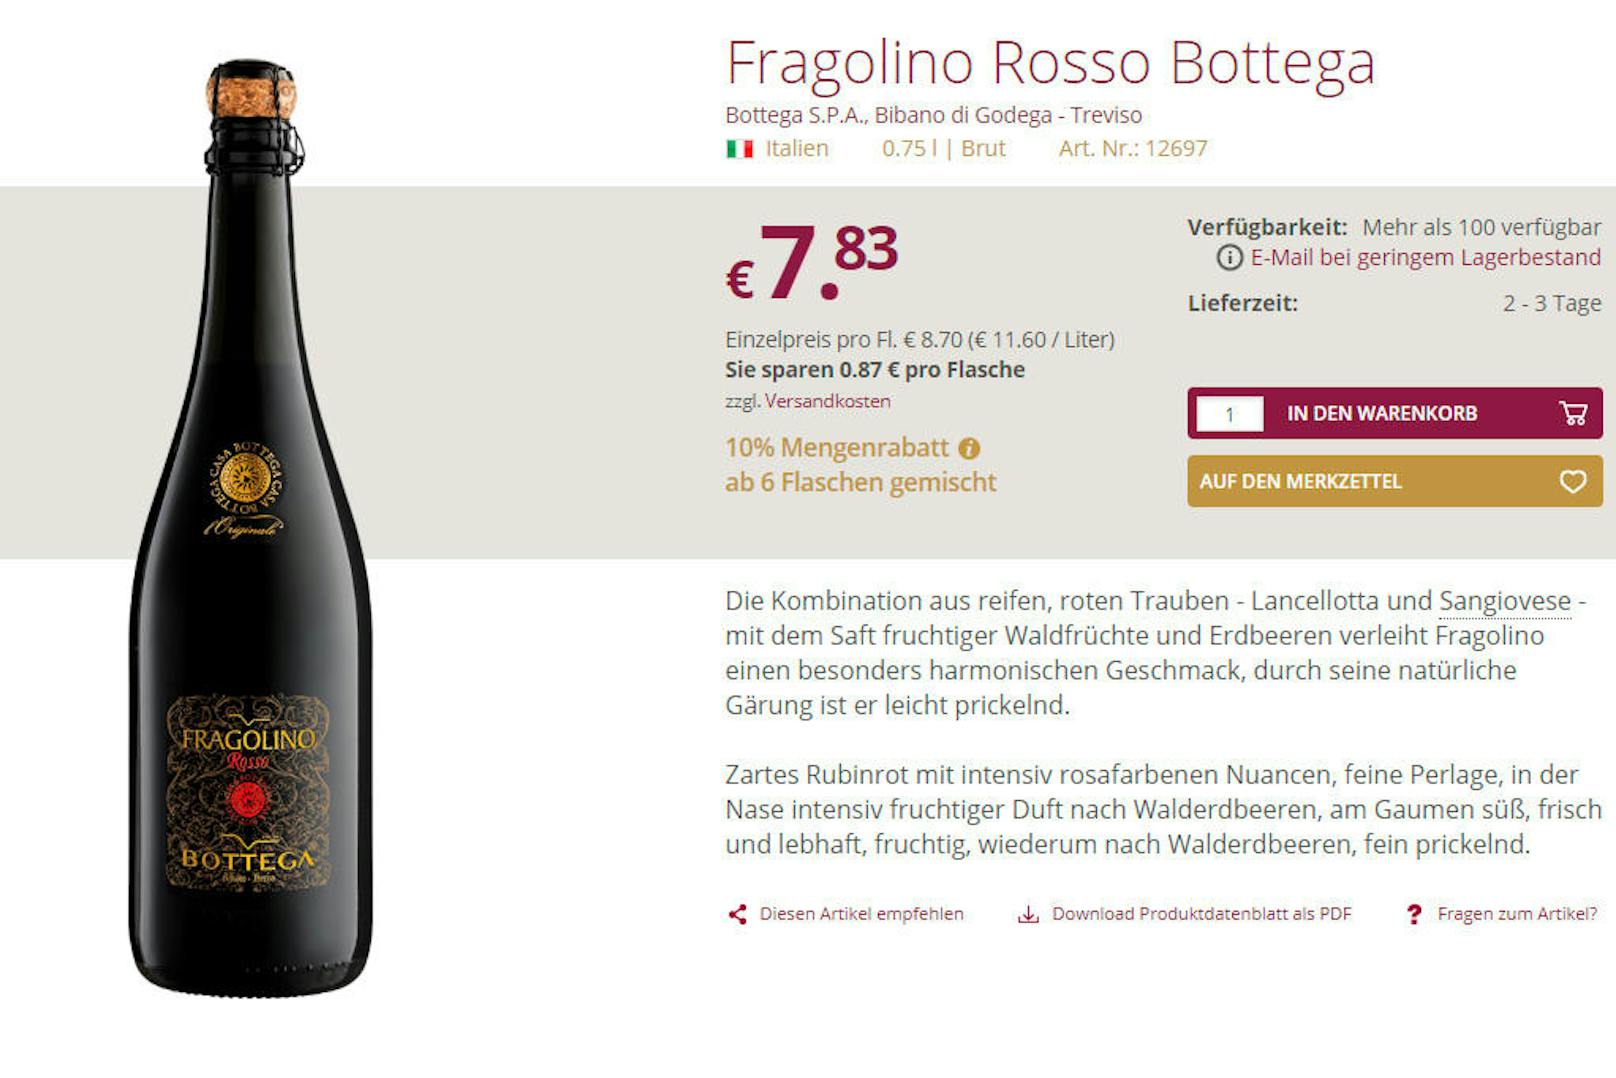 Denn: Es ist eigentlich ein "Fragolino Rosso" aus Italien. Laut der Beschreibung des Importeurs wird dieser nicht aus der Isabella-Traube gewonnen, sondern aus den Sorten Lancellotta und Sangiovese.